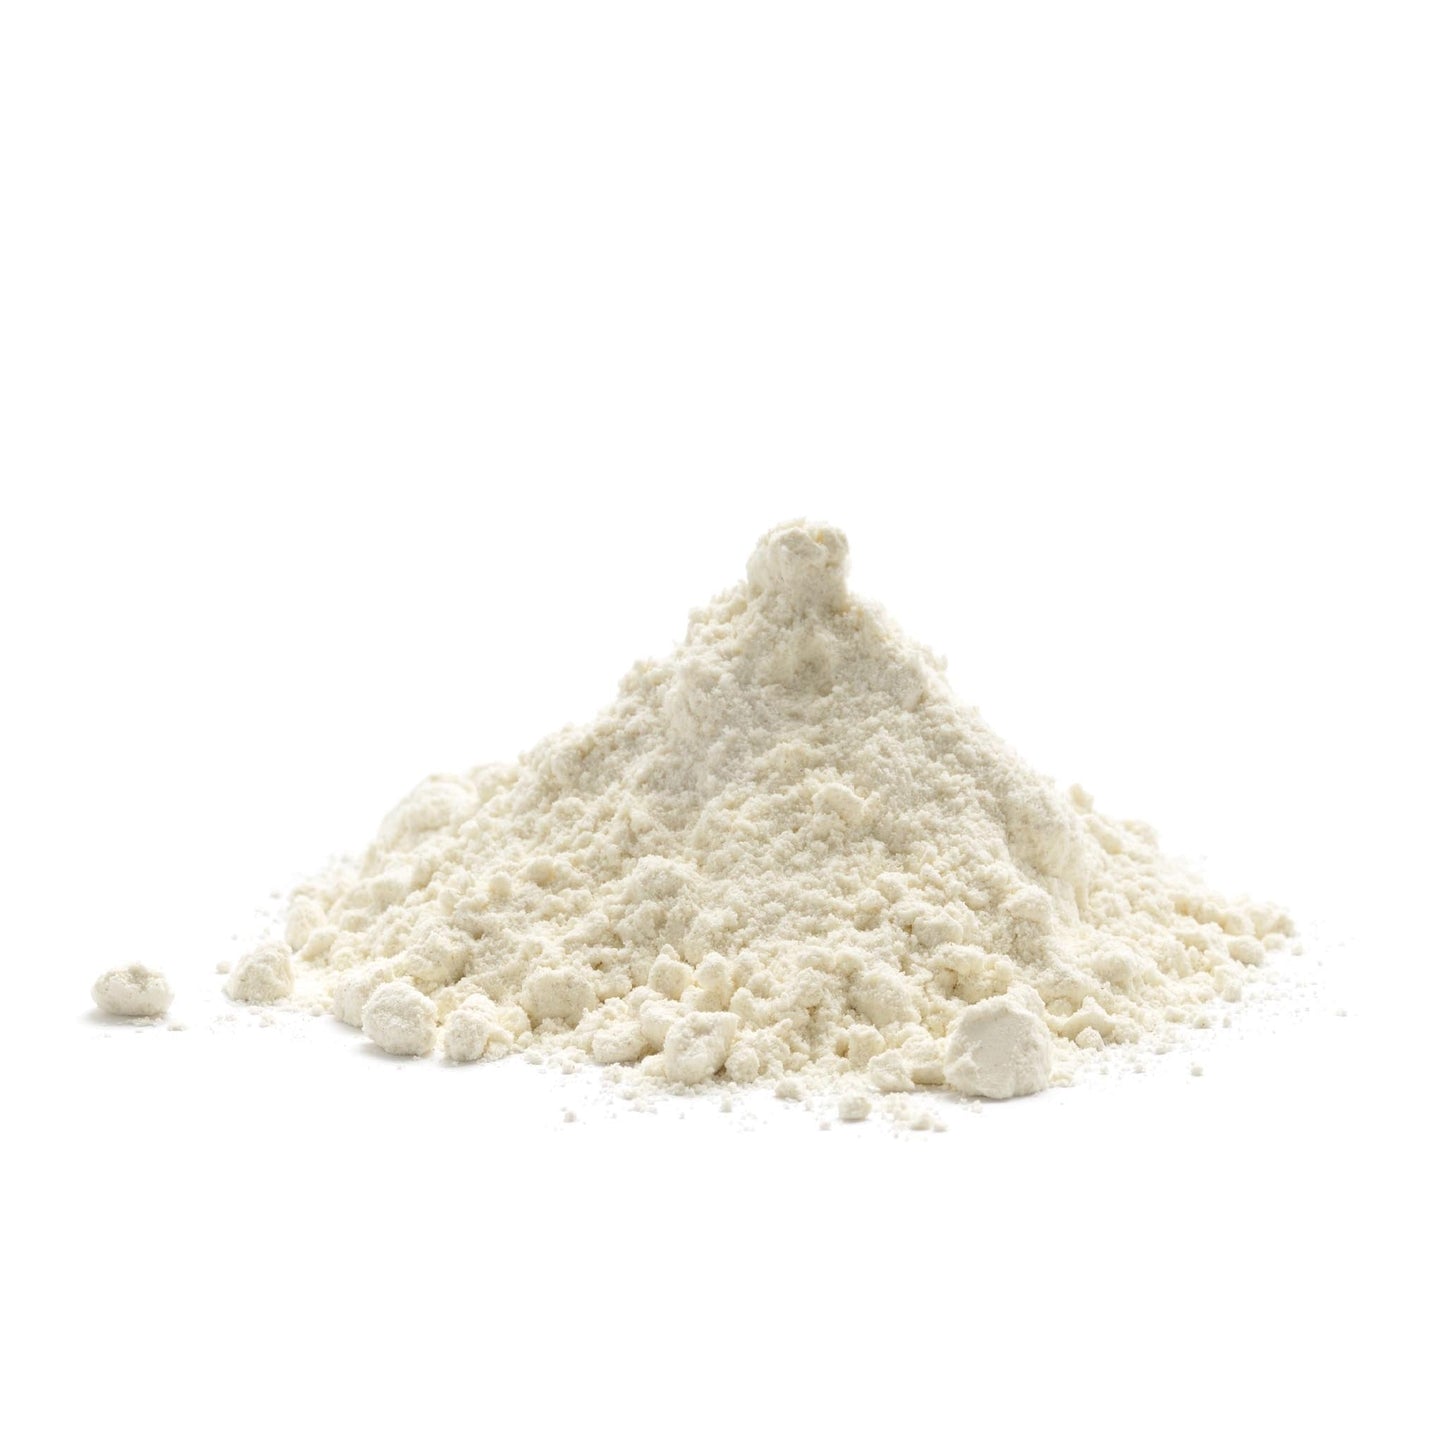 High Gluten Flour 5LB